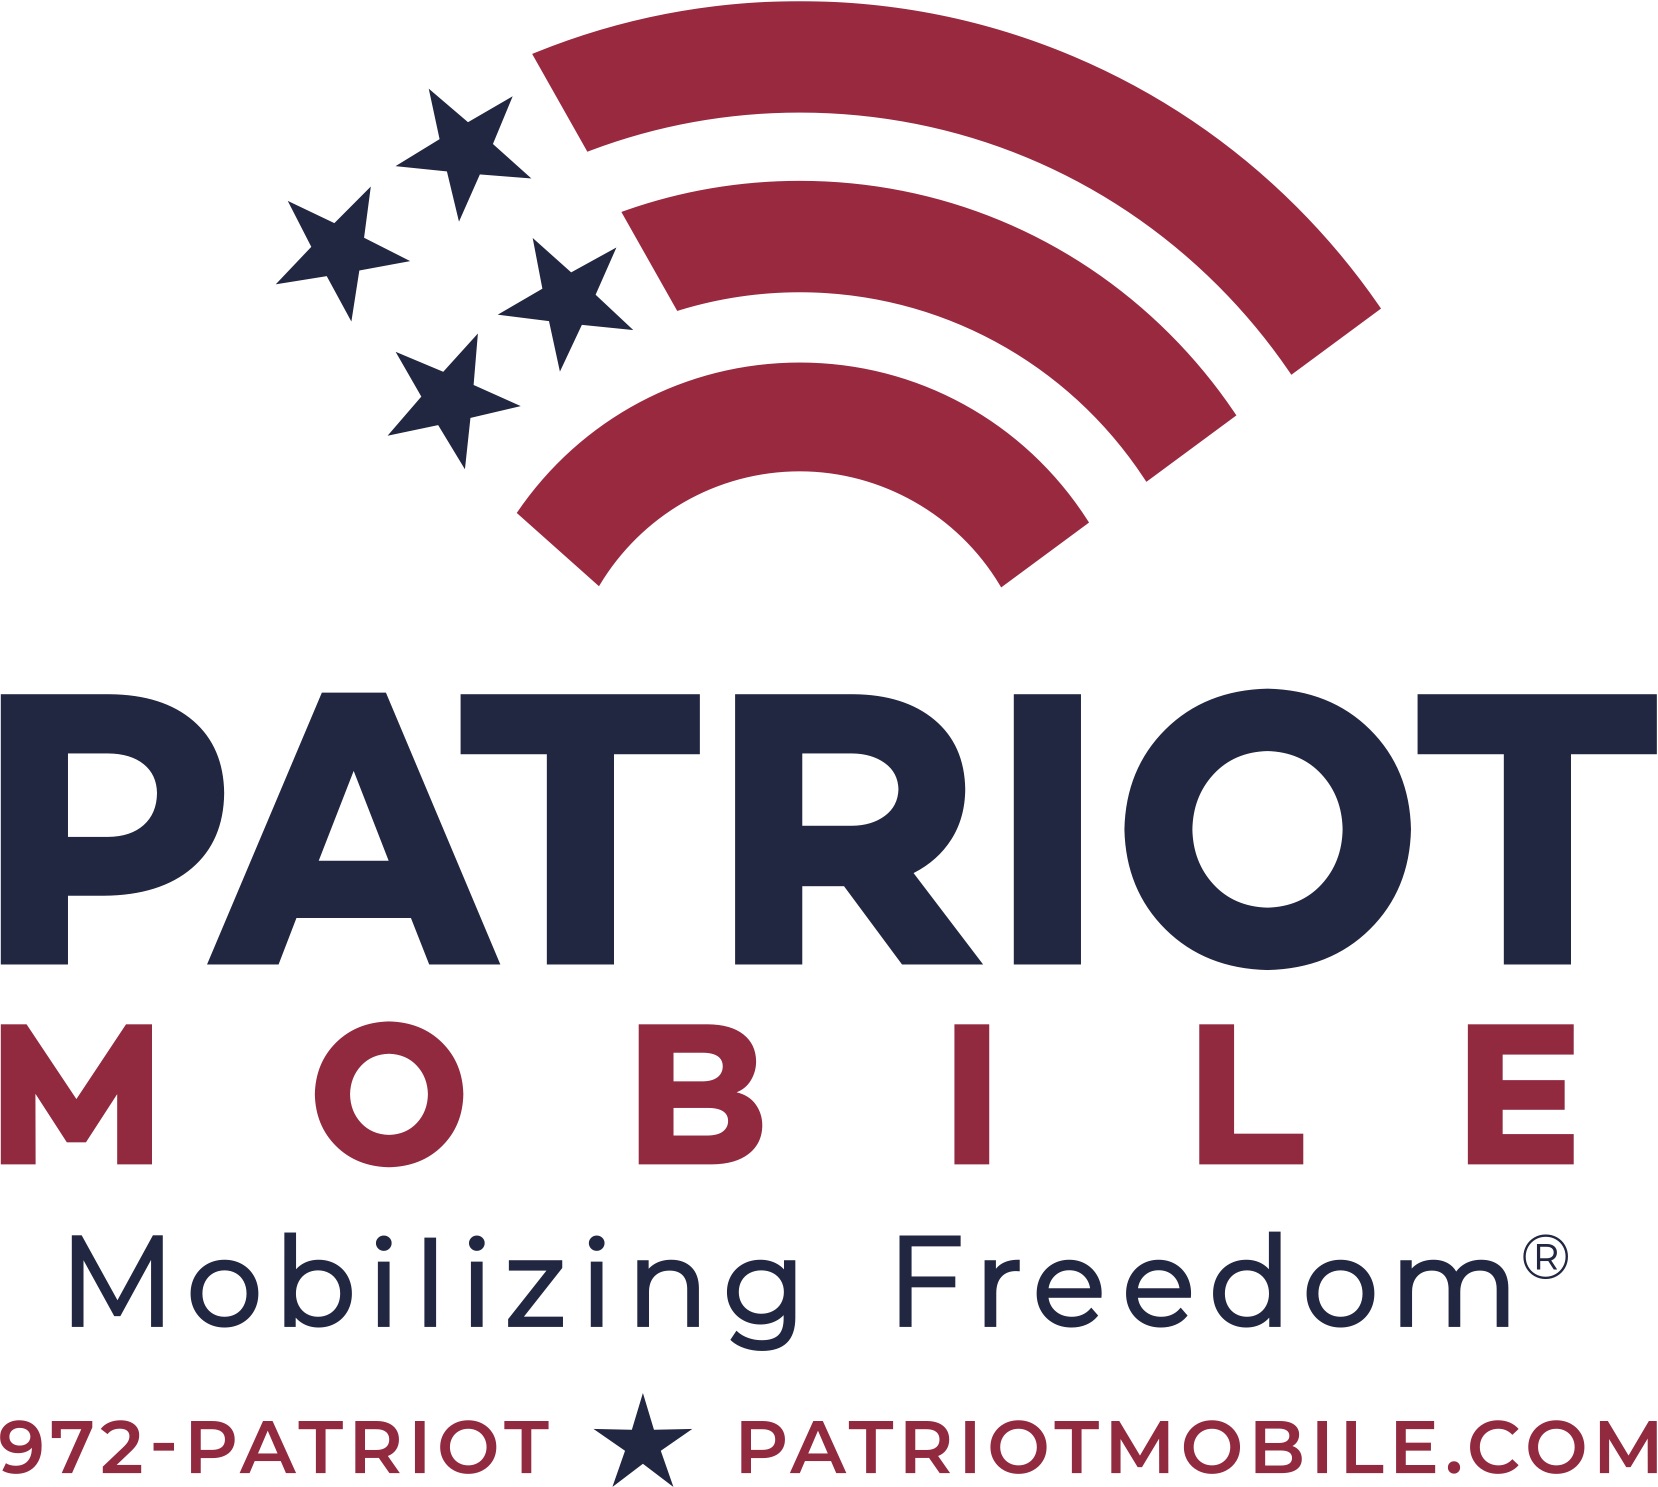 Patriot Mobile